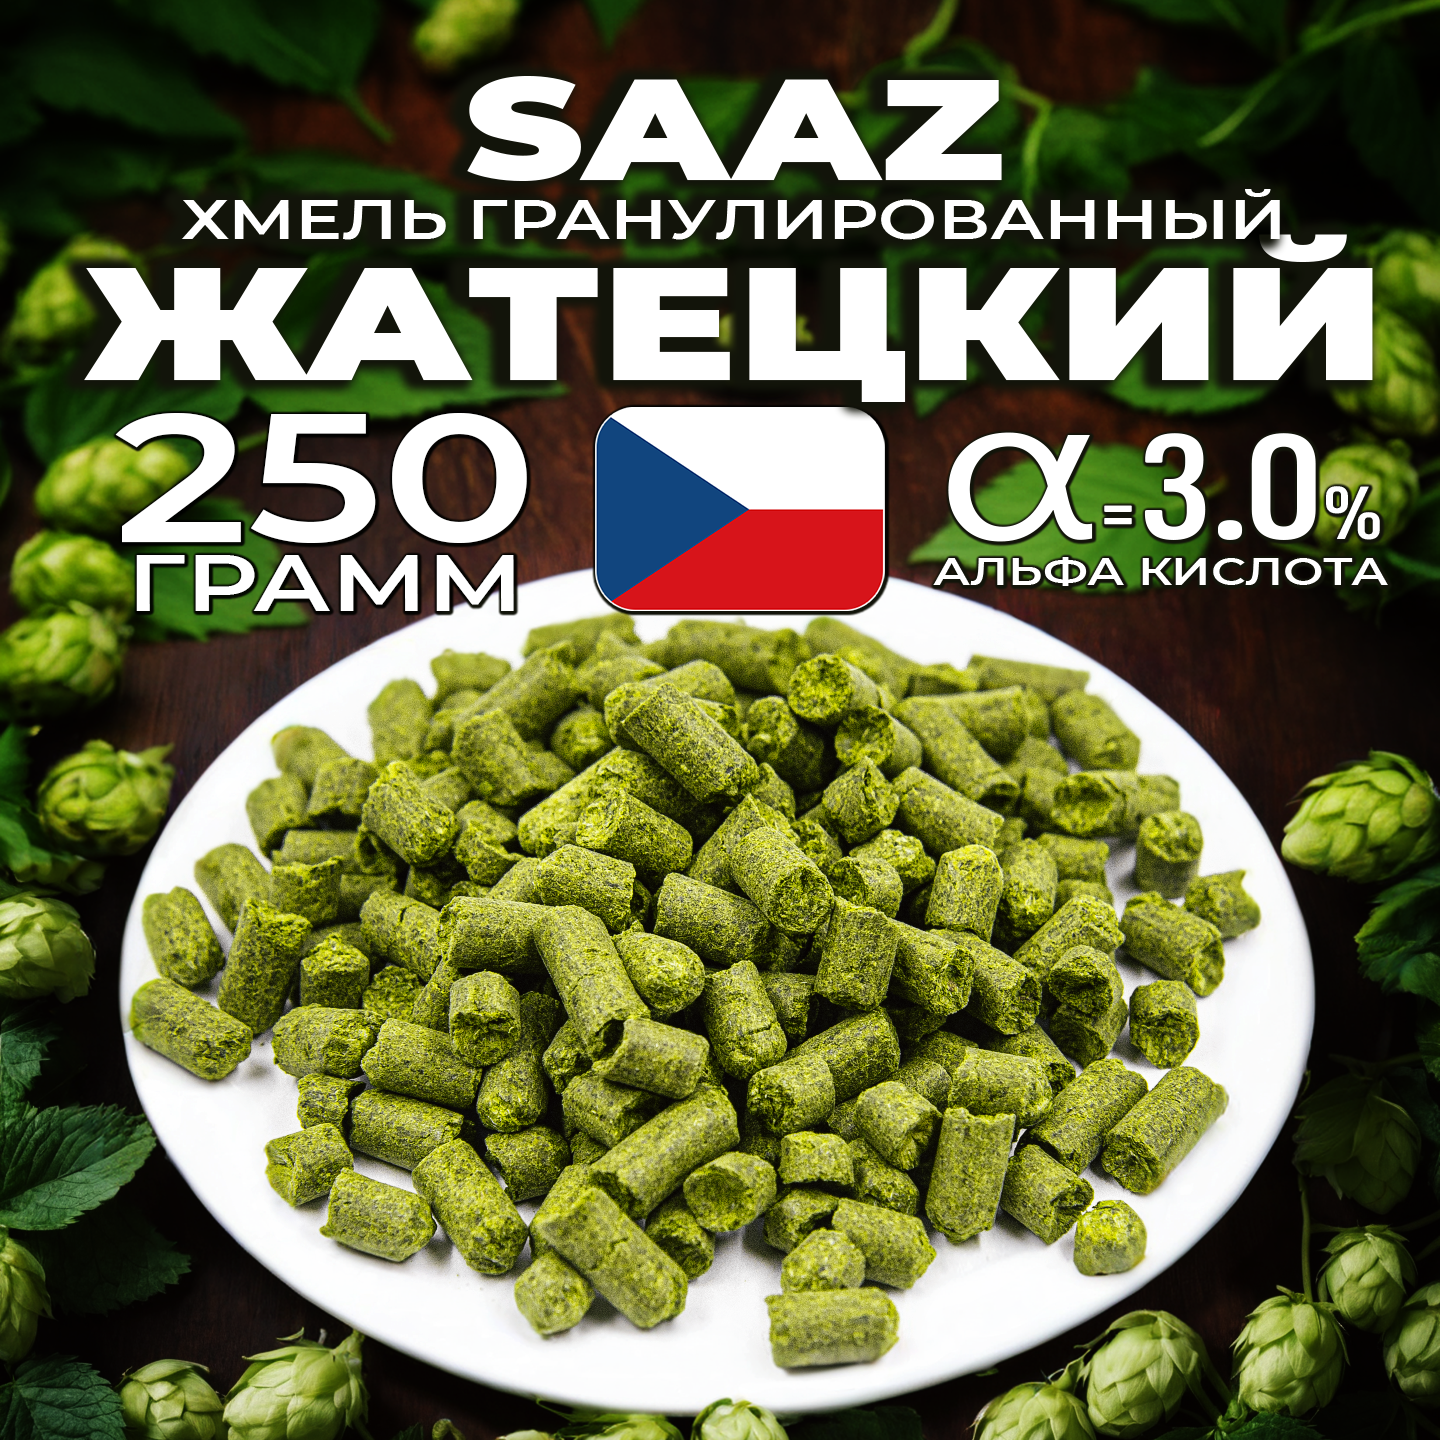 Хмель для пива Жатецкий (Saaz) гранулированный, ароматный, 250 г